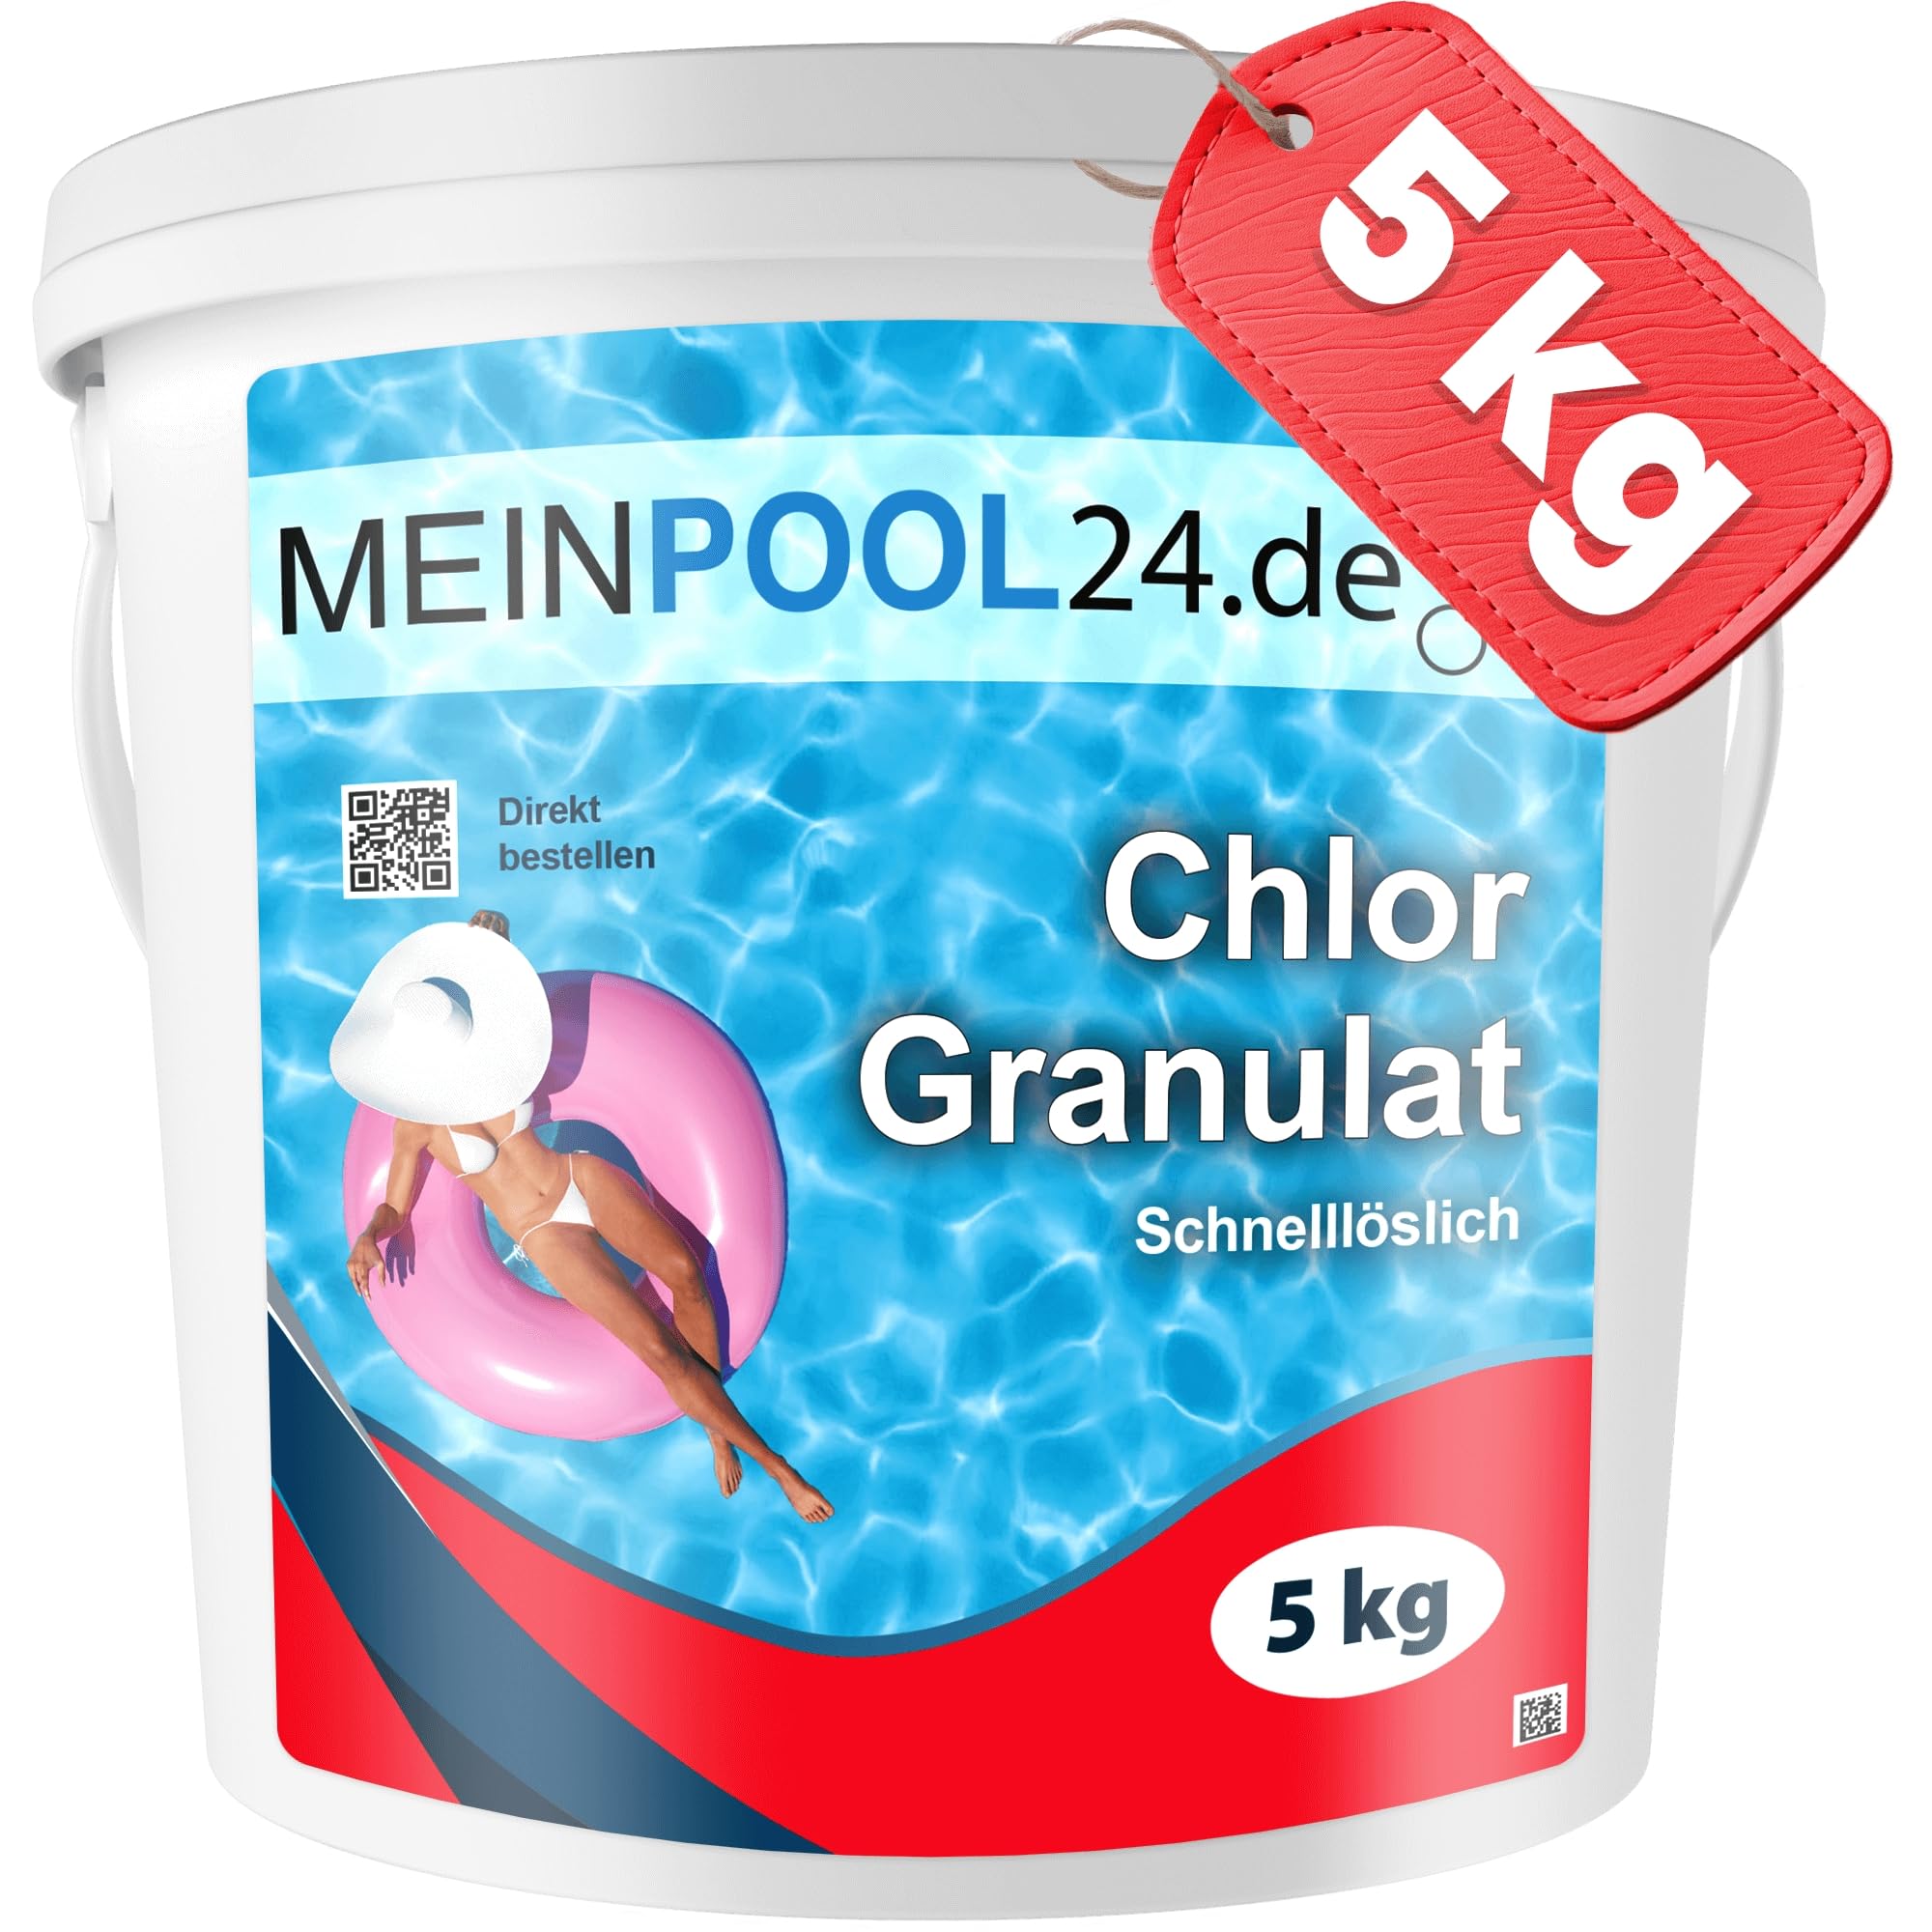 5 kg Chlorgranulat für den Pool - wirkt schnell und zuverlässig im Pool und Schwimmbad